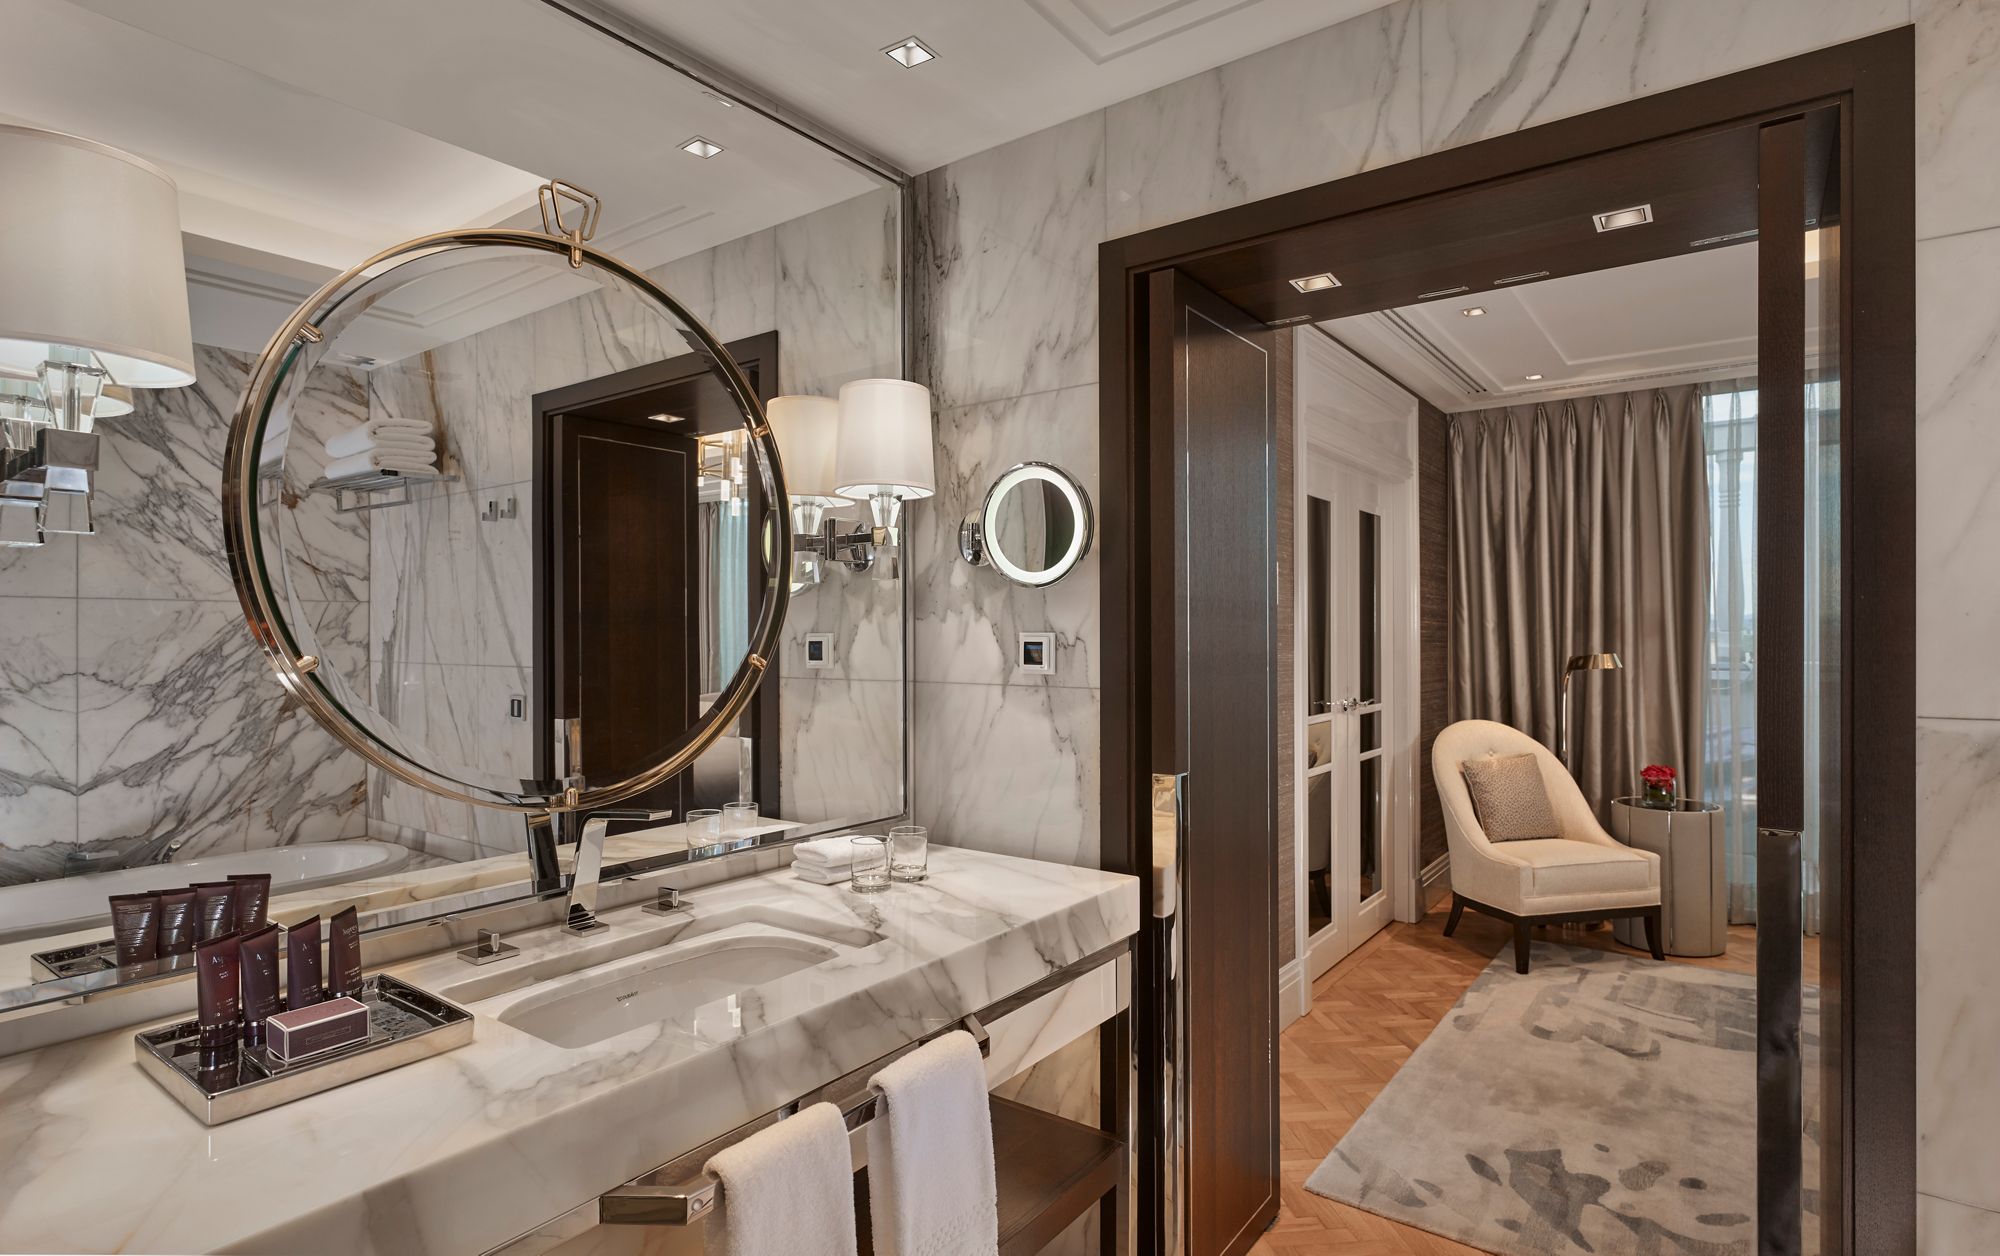 A burkolatok tekintetében a Ritz-Carlton Szállodák a márvány mintázattal rendelkező, nagyméretű csempelapokat preferálják.